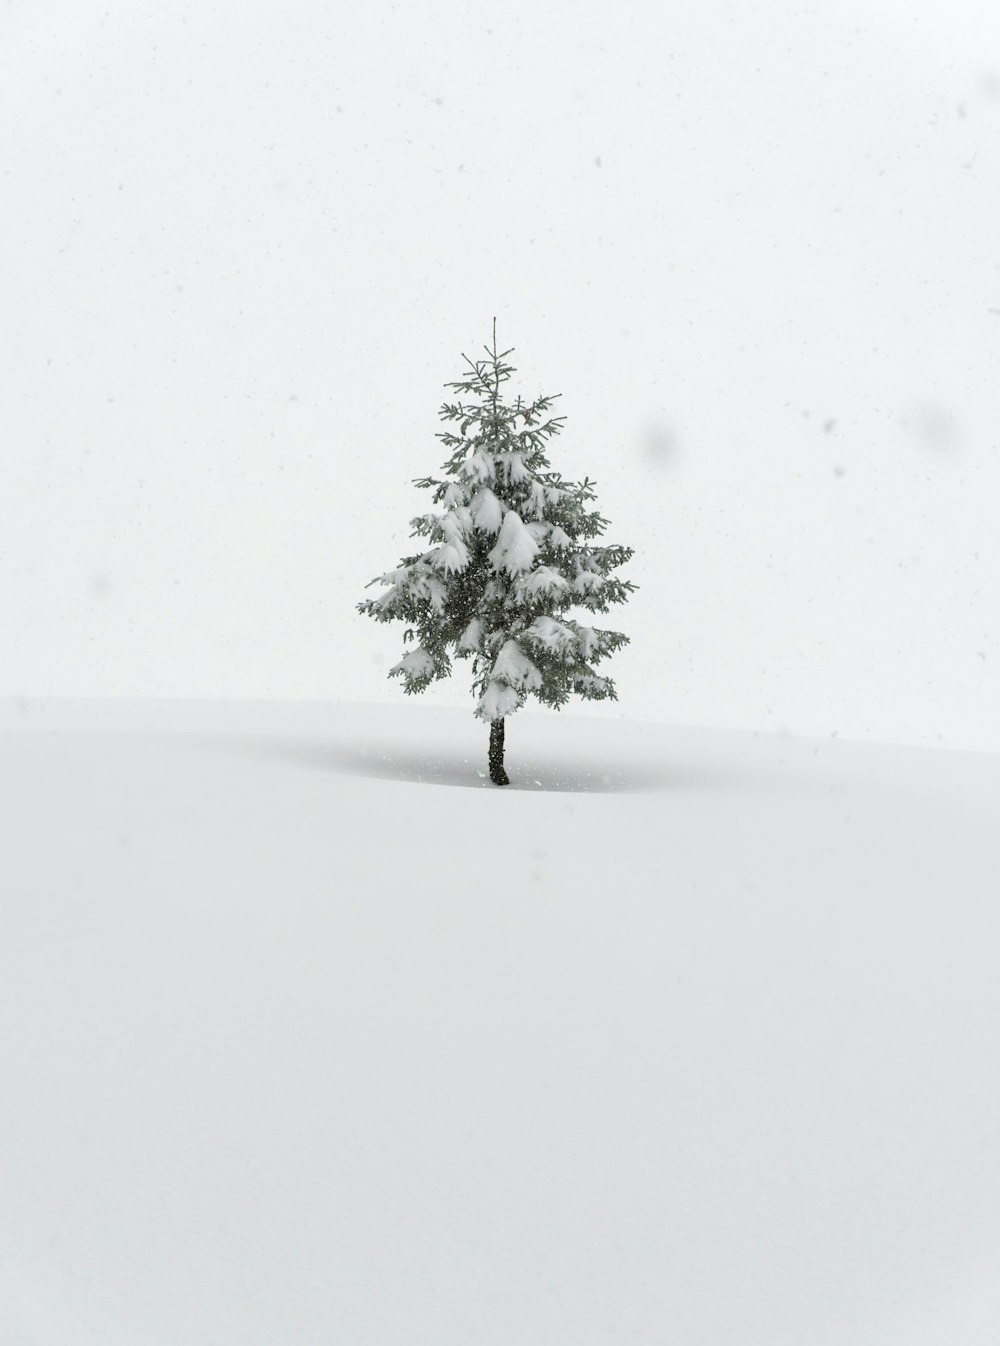 雪原に浮かぶ一本の松の木